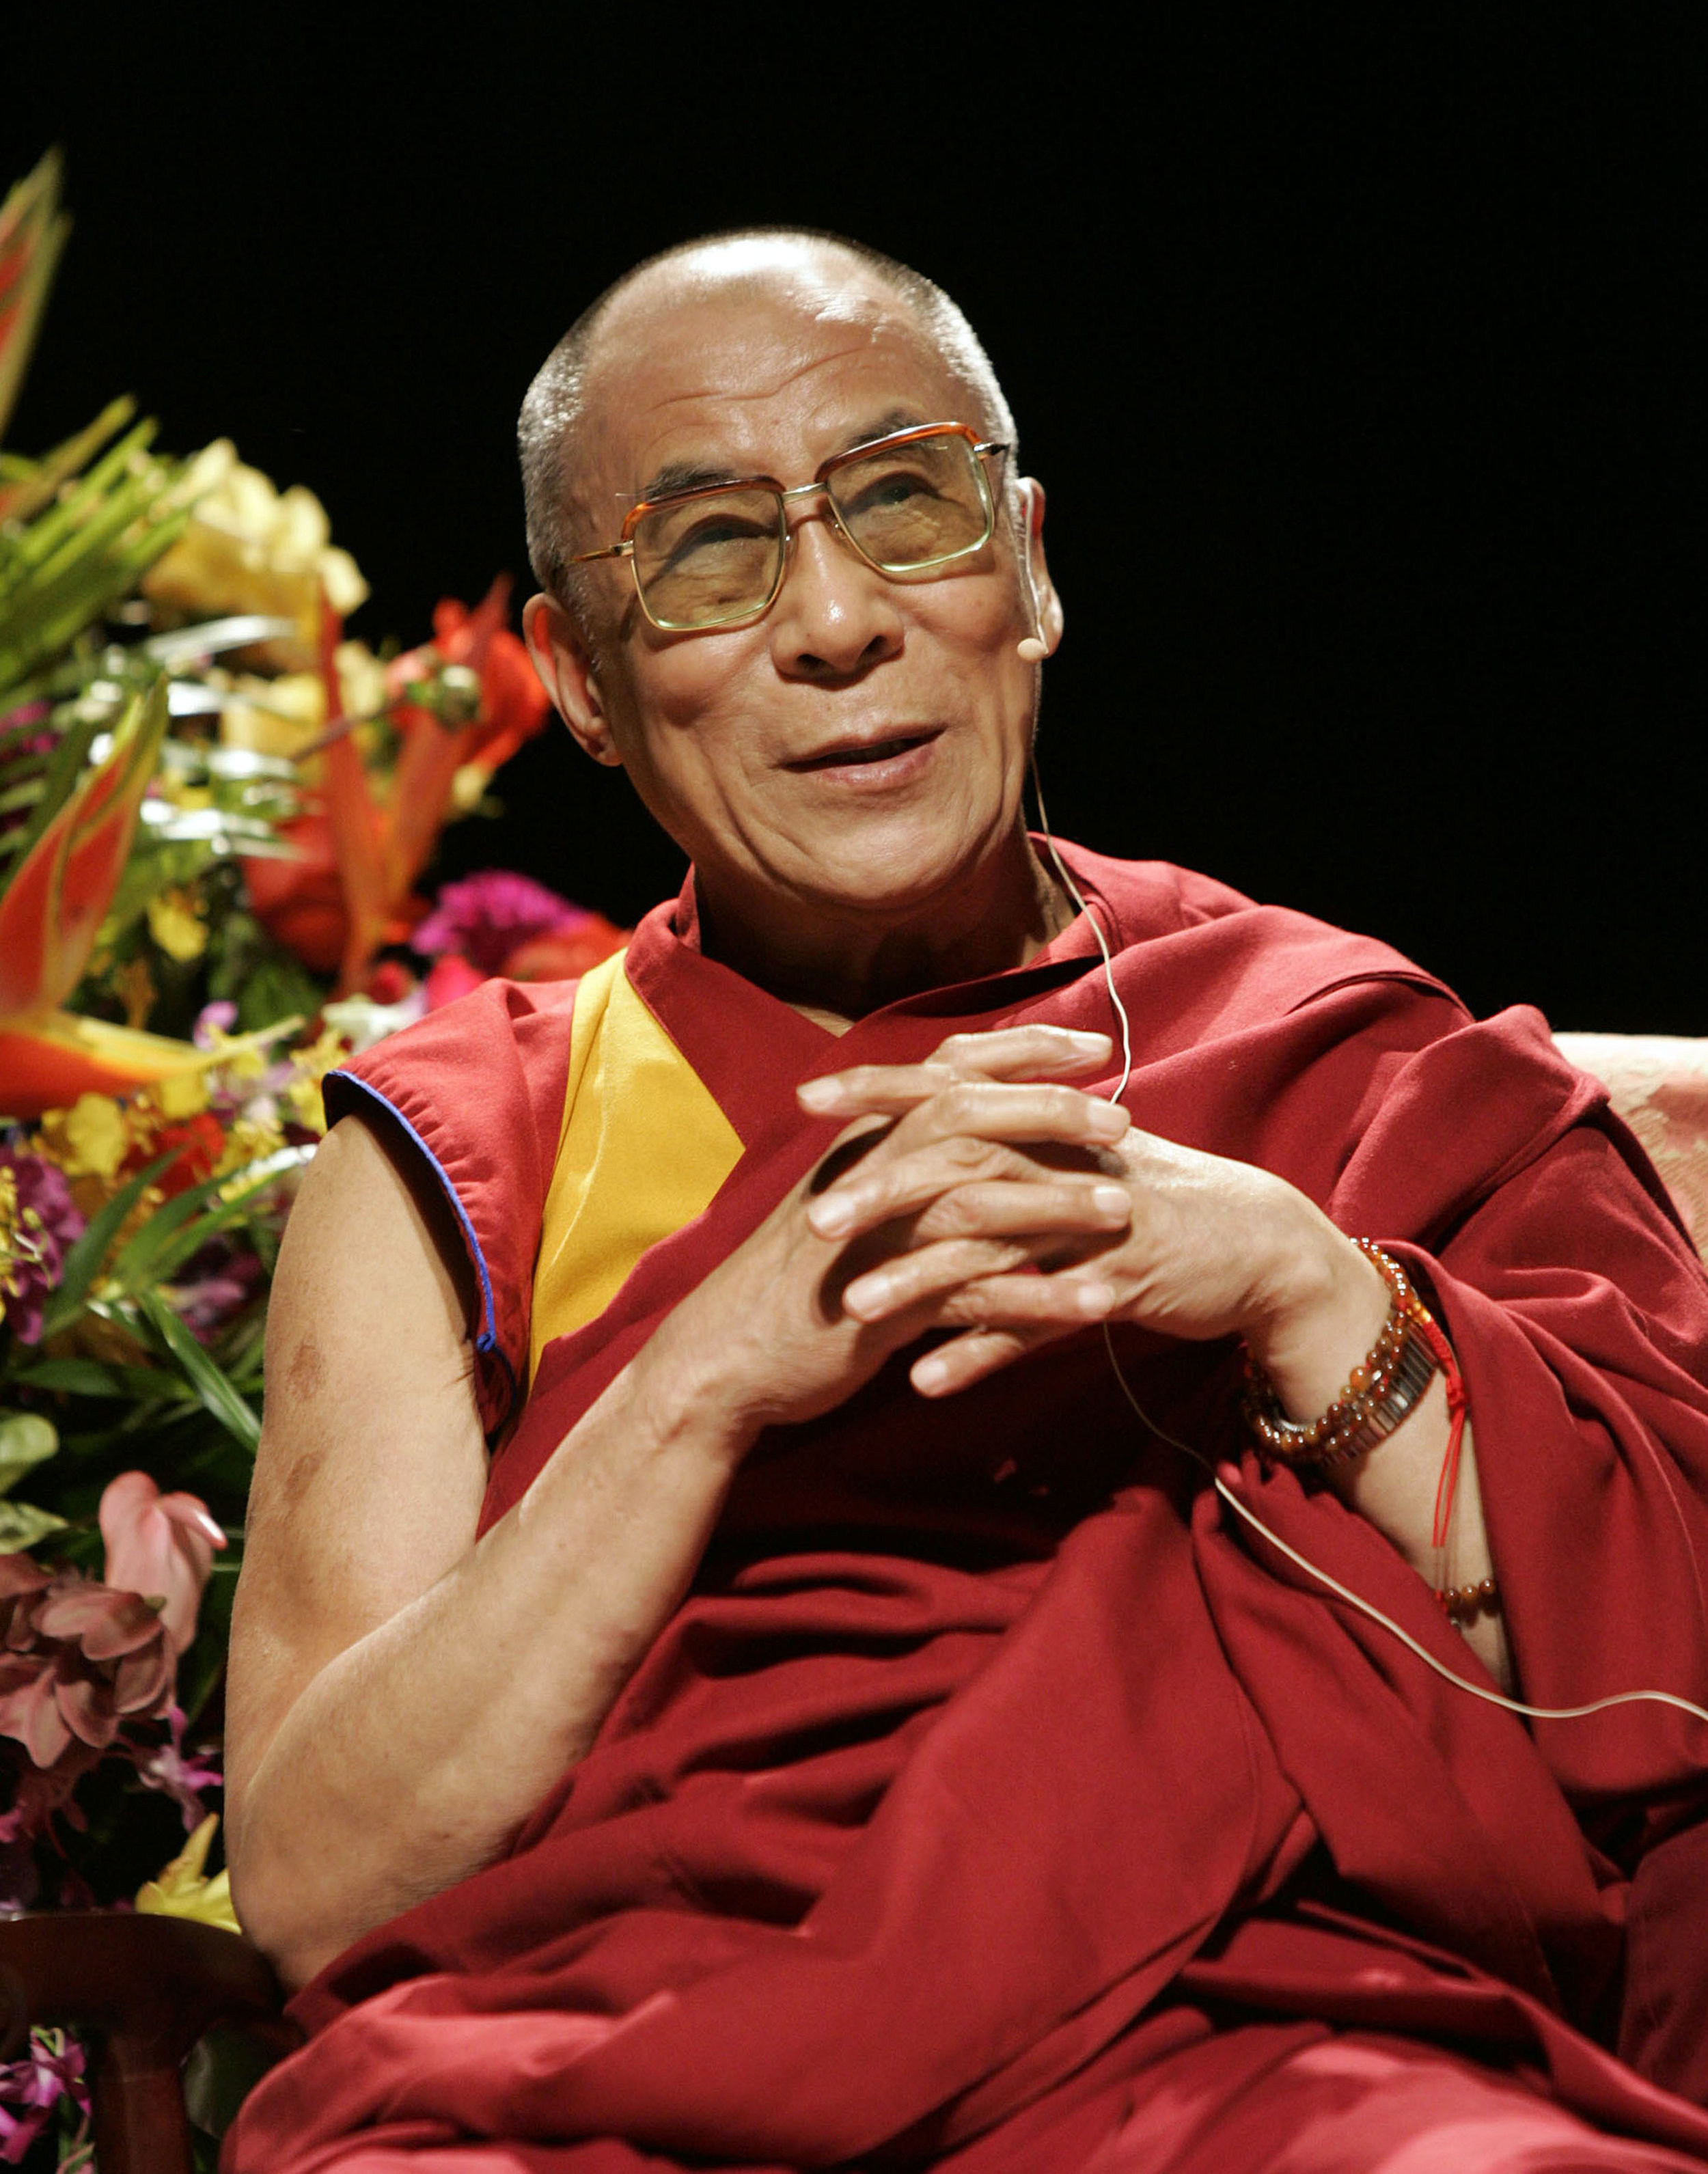 dalai lama_0003.JPG